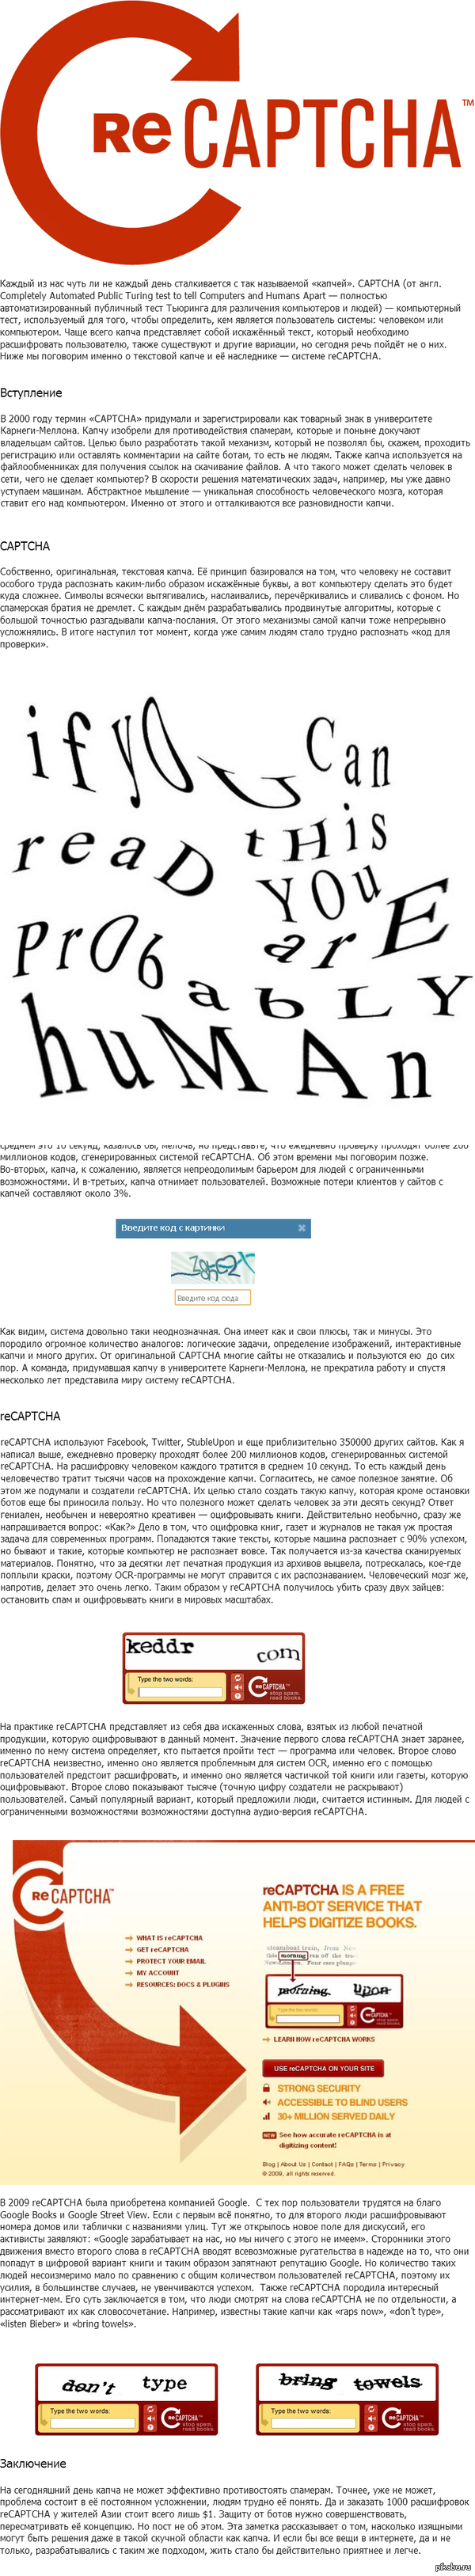   reCAPTCHA.  ,    KEDDR.com